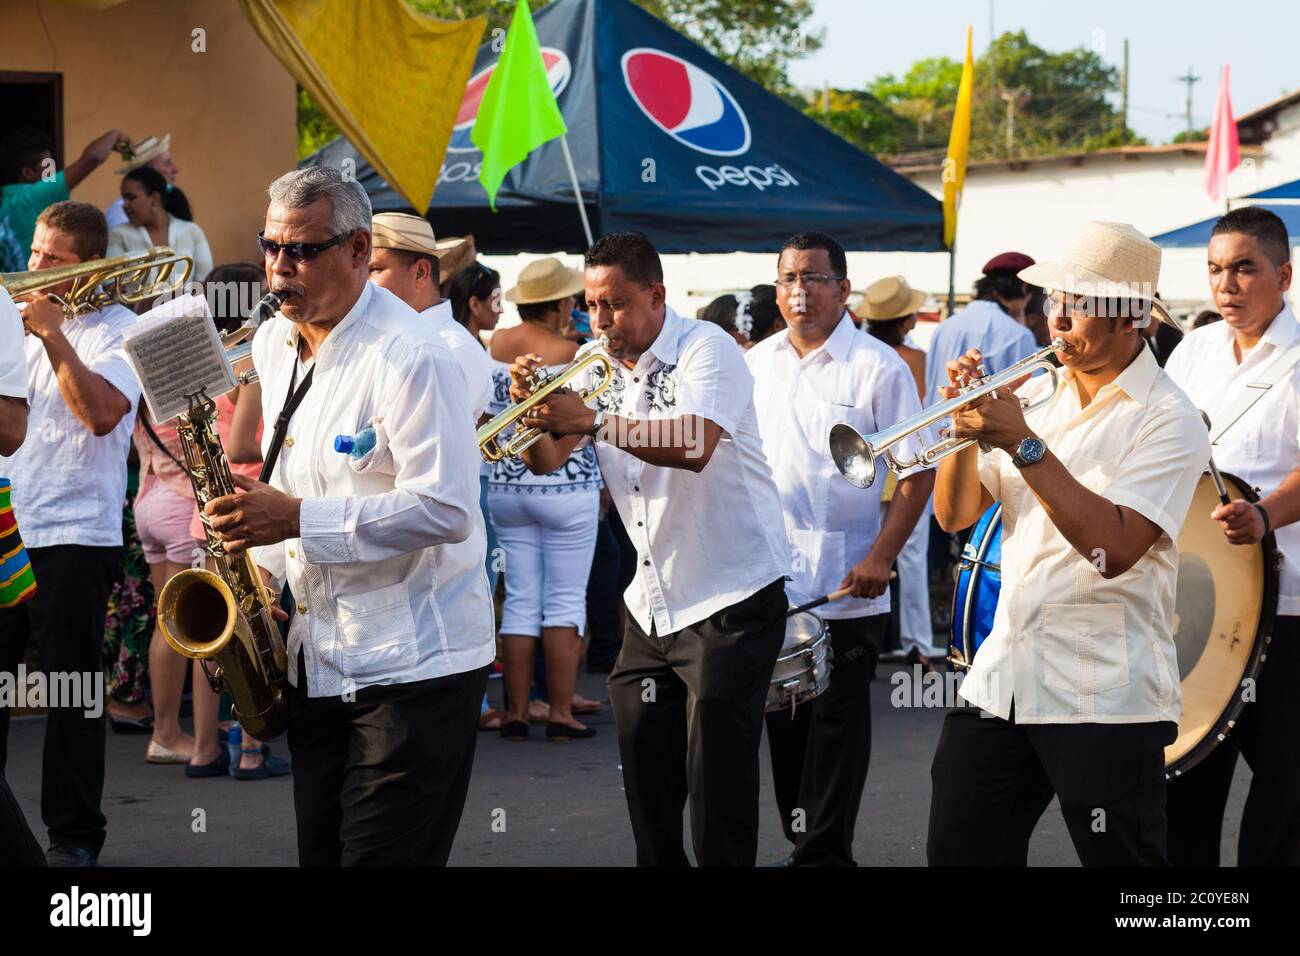 Musicians at 'El Desfile de las Mil Polleras' (thousand polleras), Las Tablas, Los Santos province, Republic of Panama. Stock Photo